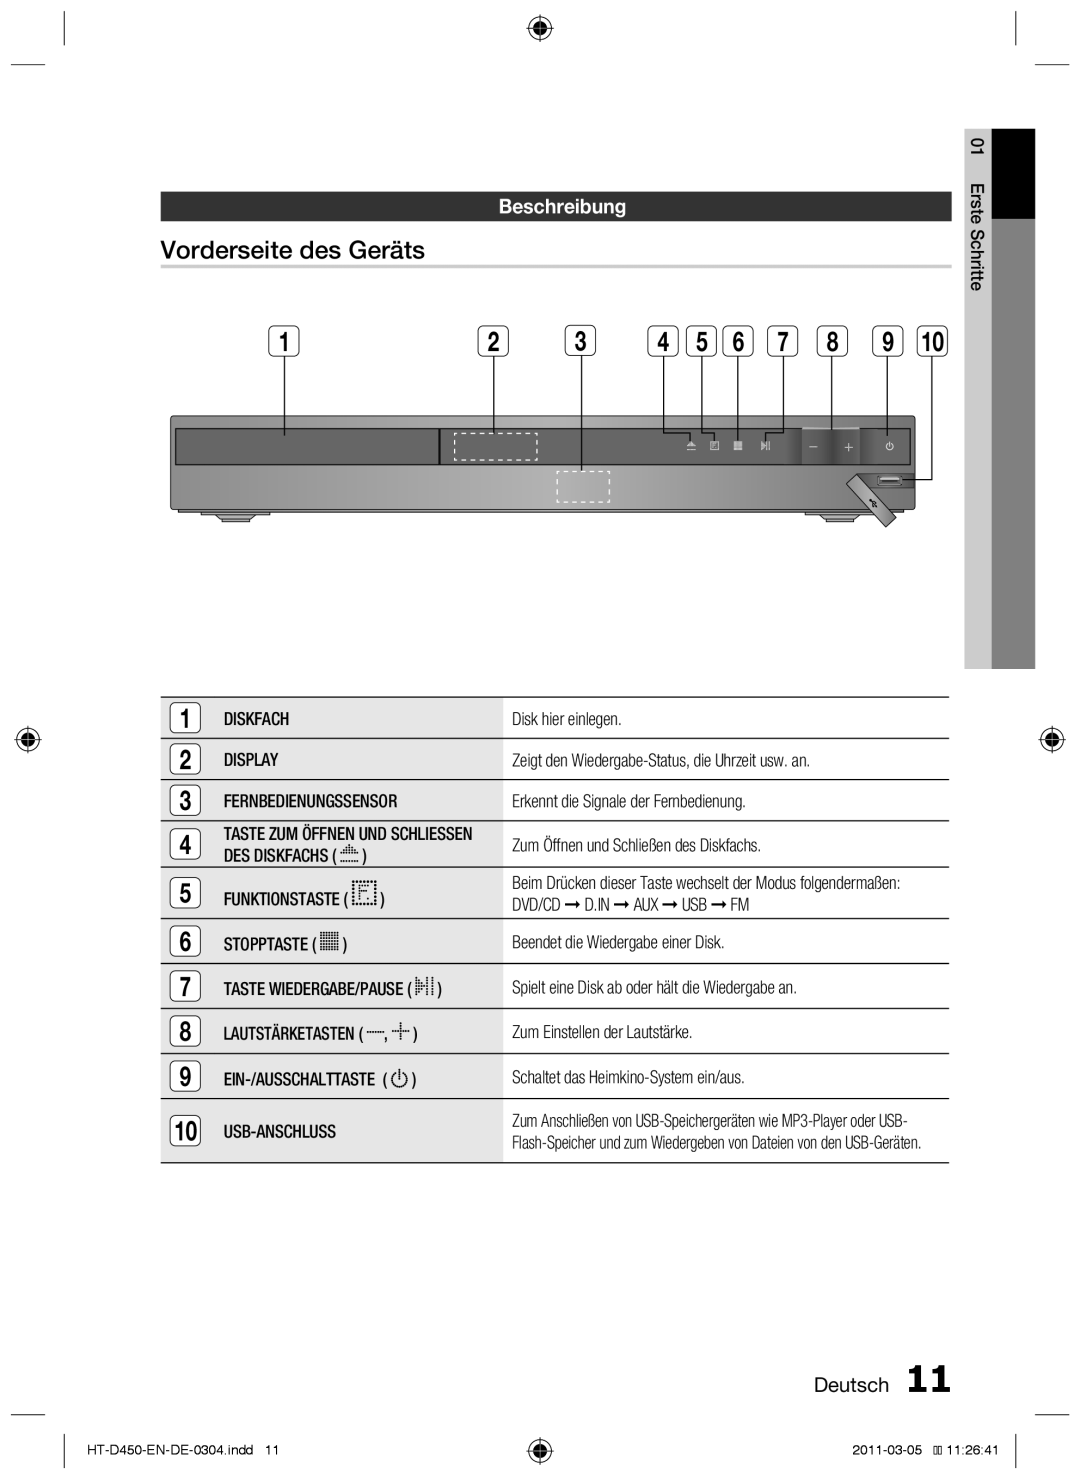 Samsung HT-D453, HT-D450, HT-D455 user manual Vorderseite des Geräts, Beschreibung, Deutsch 